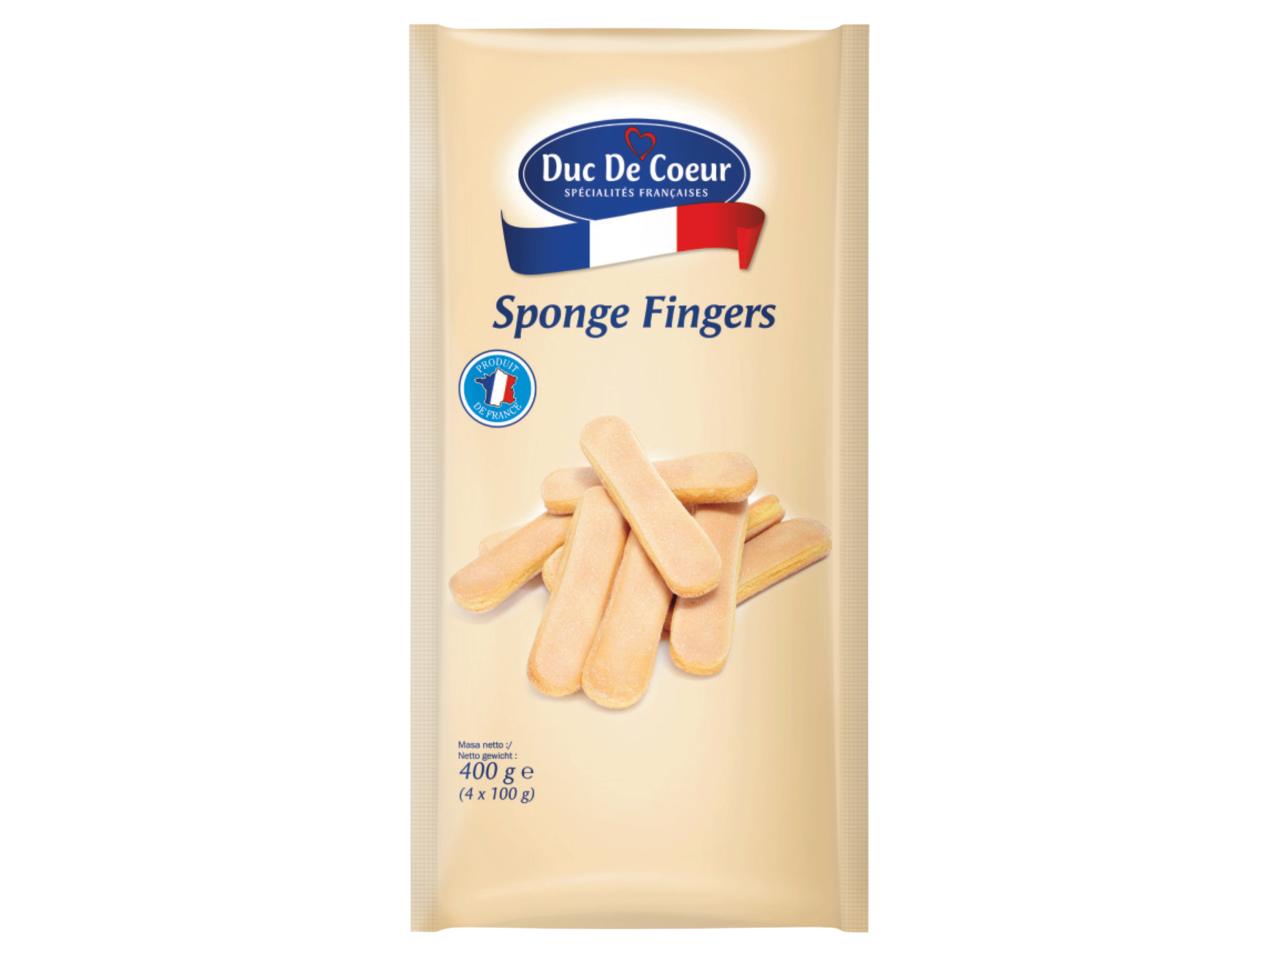 DUC DE COEUR Sponge Fingers